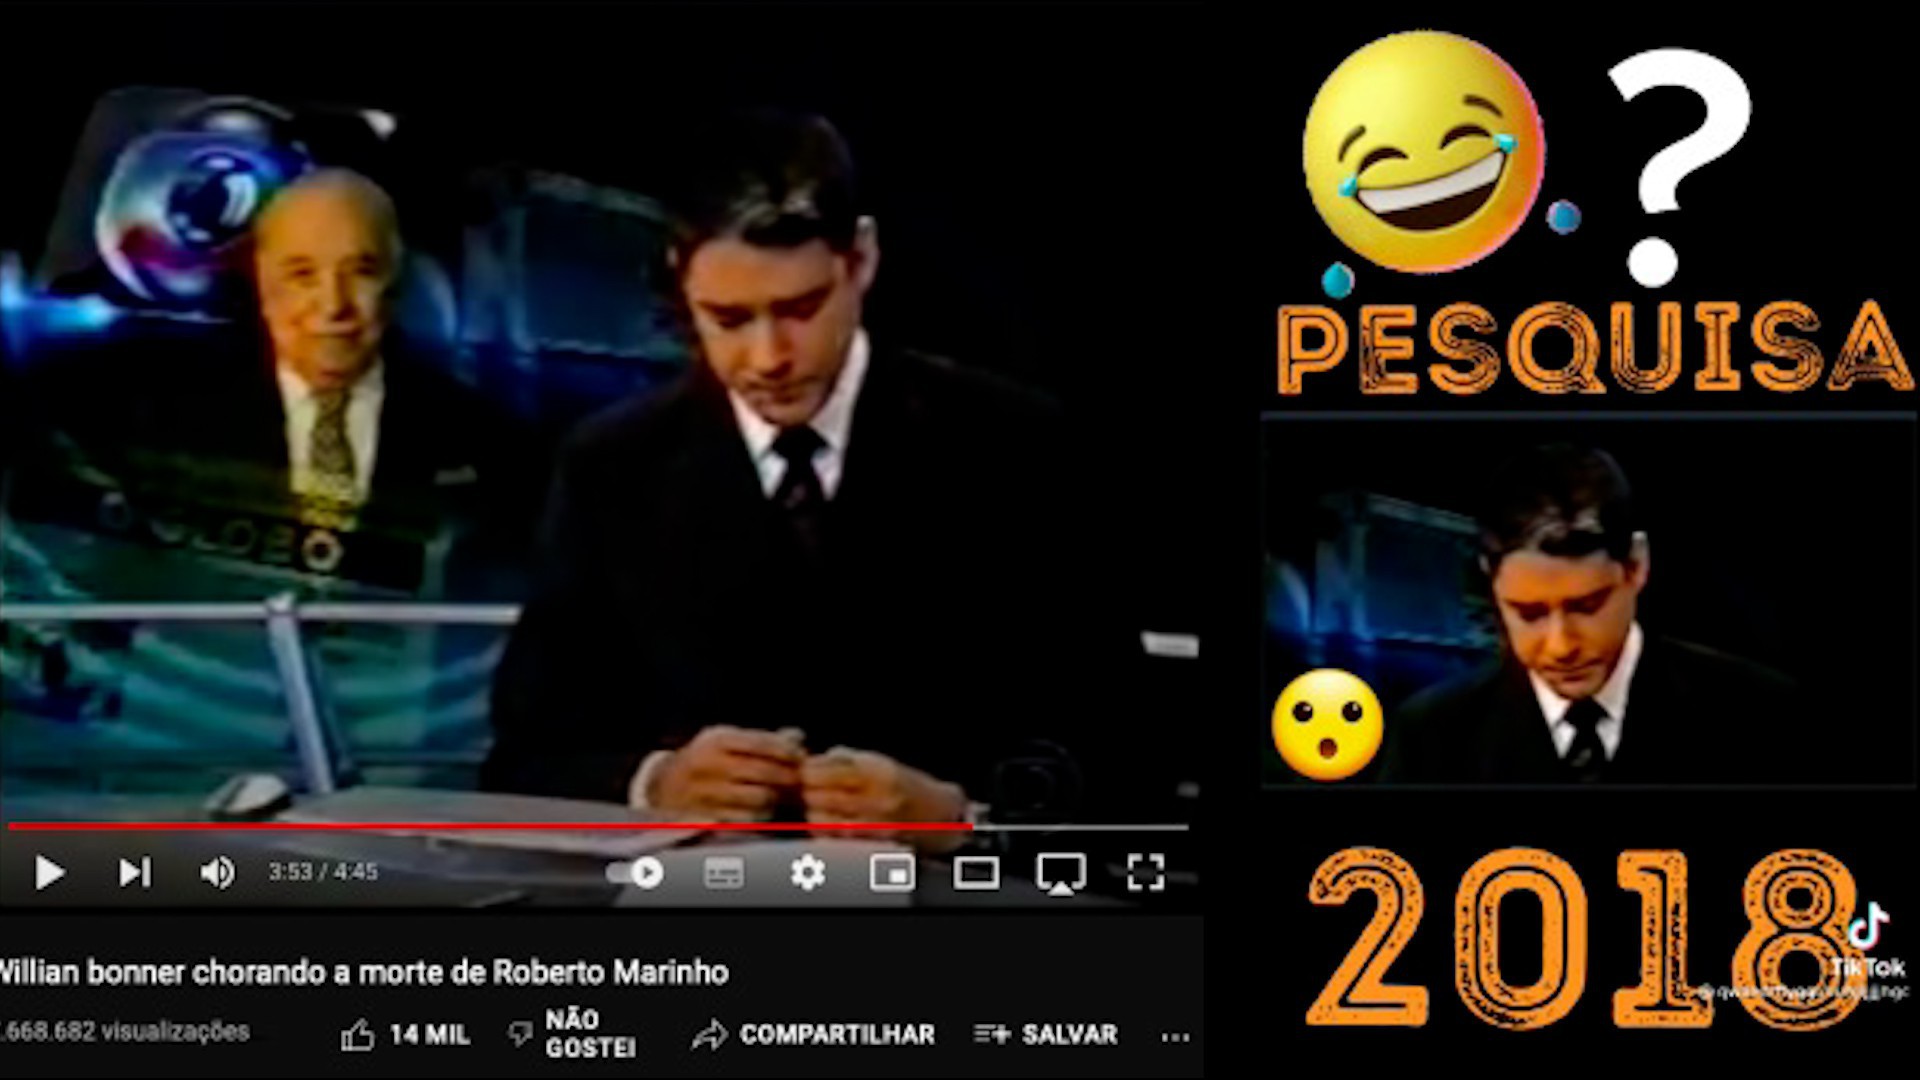 À esquerda, imagem da reportagem original de 7 de agosto de 2003, em que Bonner lamenta a morte de Roberto Marinho. À direita, imagem editada utilizada pelo vídeo verificado pelo Comprova - Reprodução